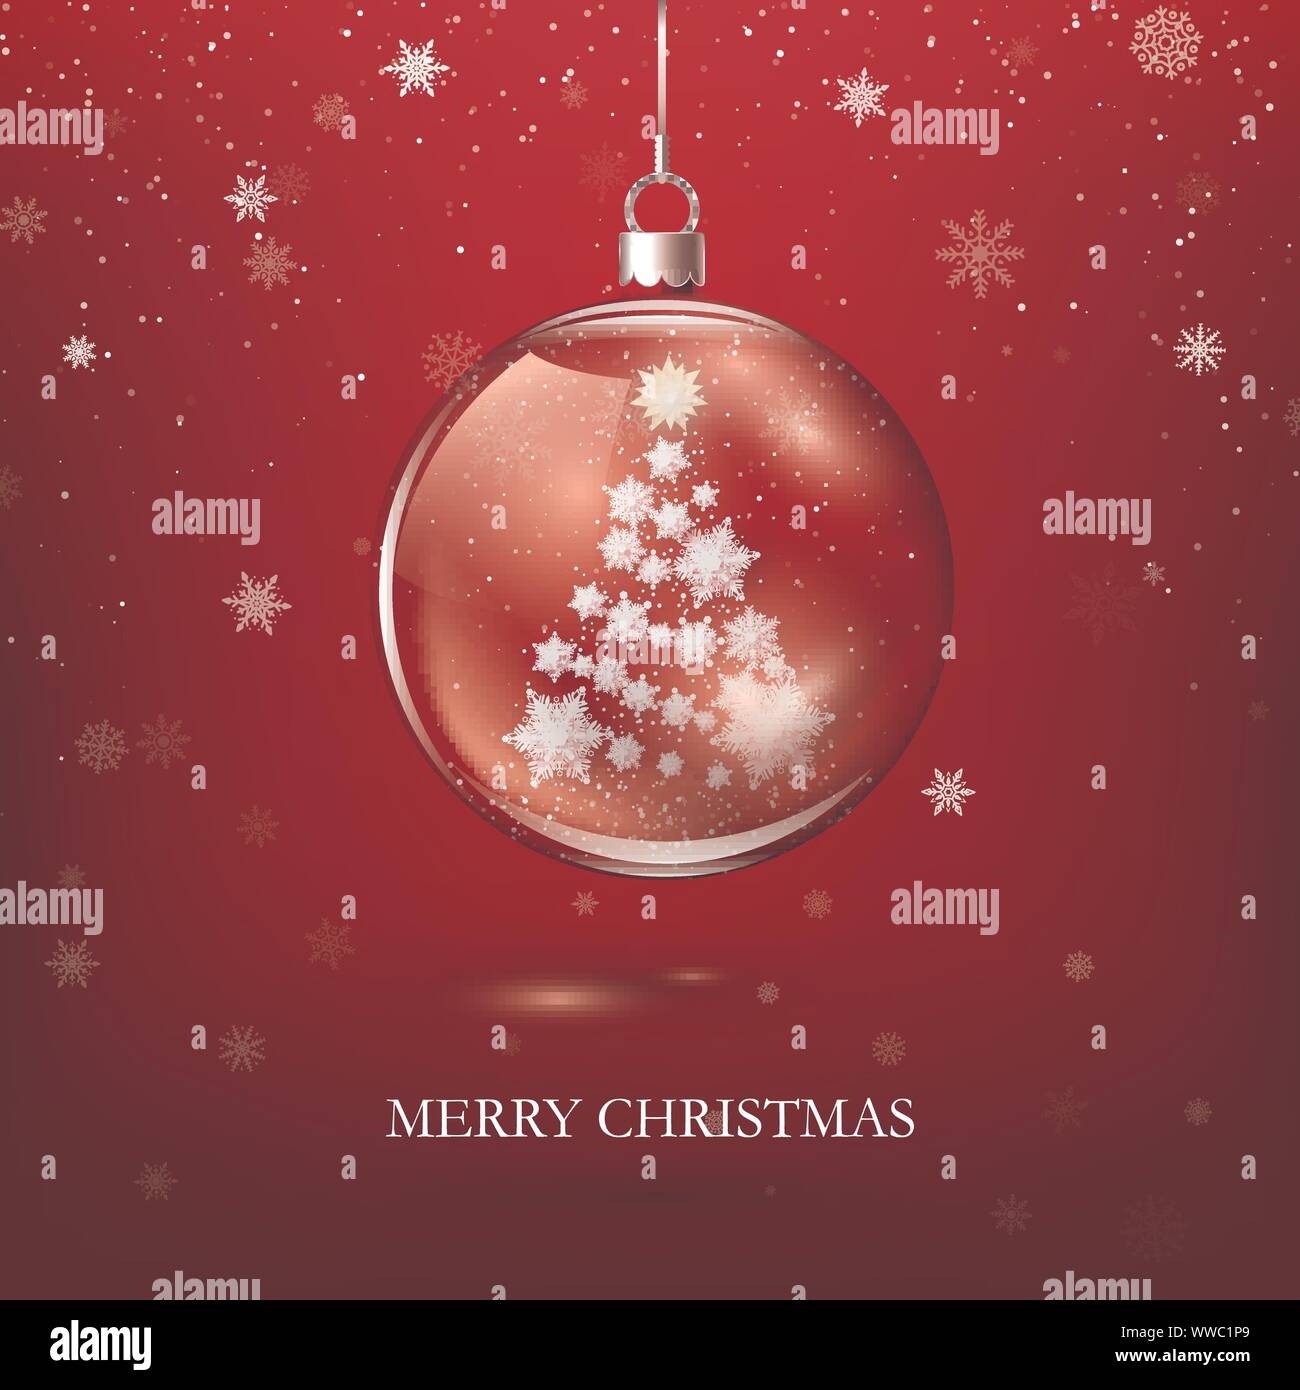 Transparent Glänzend Weihnachten Dekoration. Weihnachtsbaum Silhouette aus Papier Schneeflocken in Glas Kugel. Neues Jahr Grußkarte Design. Vektor i Stock Vektor